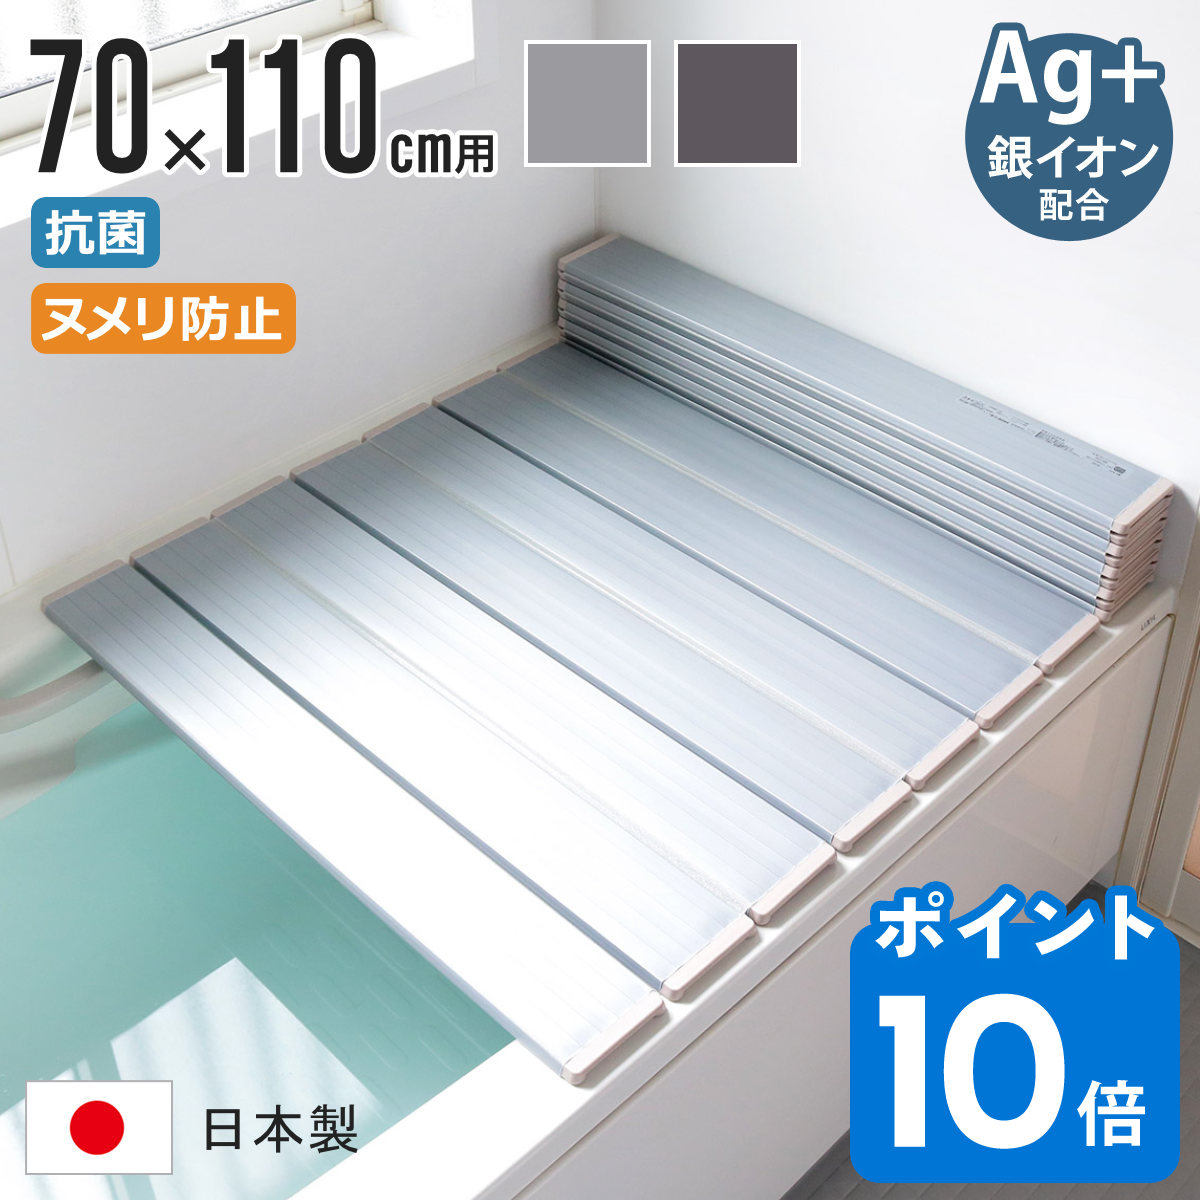 東プレ AG折りたたみ 風呂ふた L12 日本製 L-12 （商品サイズ750×1193